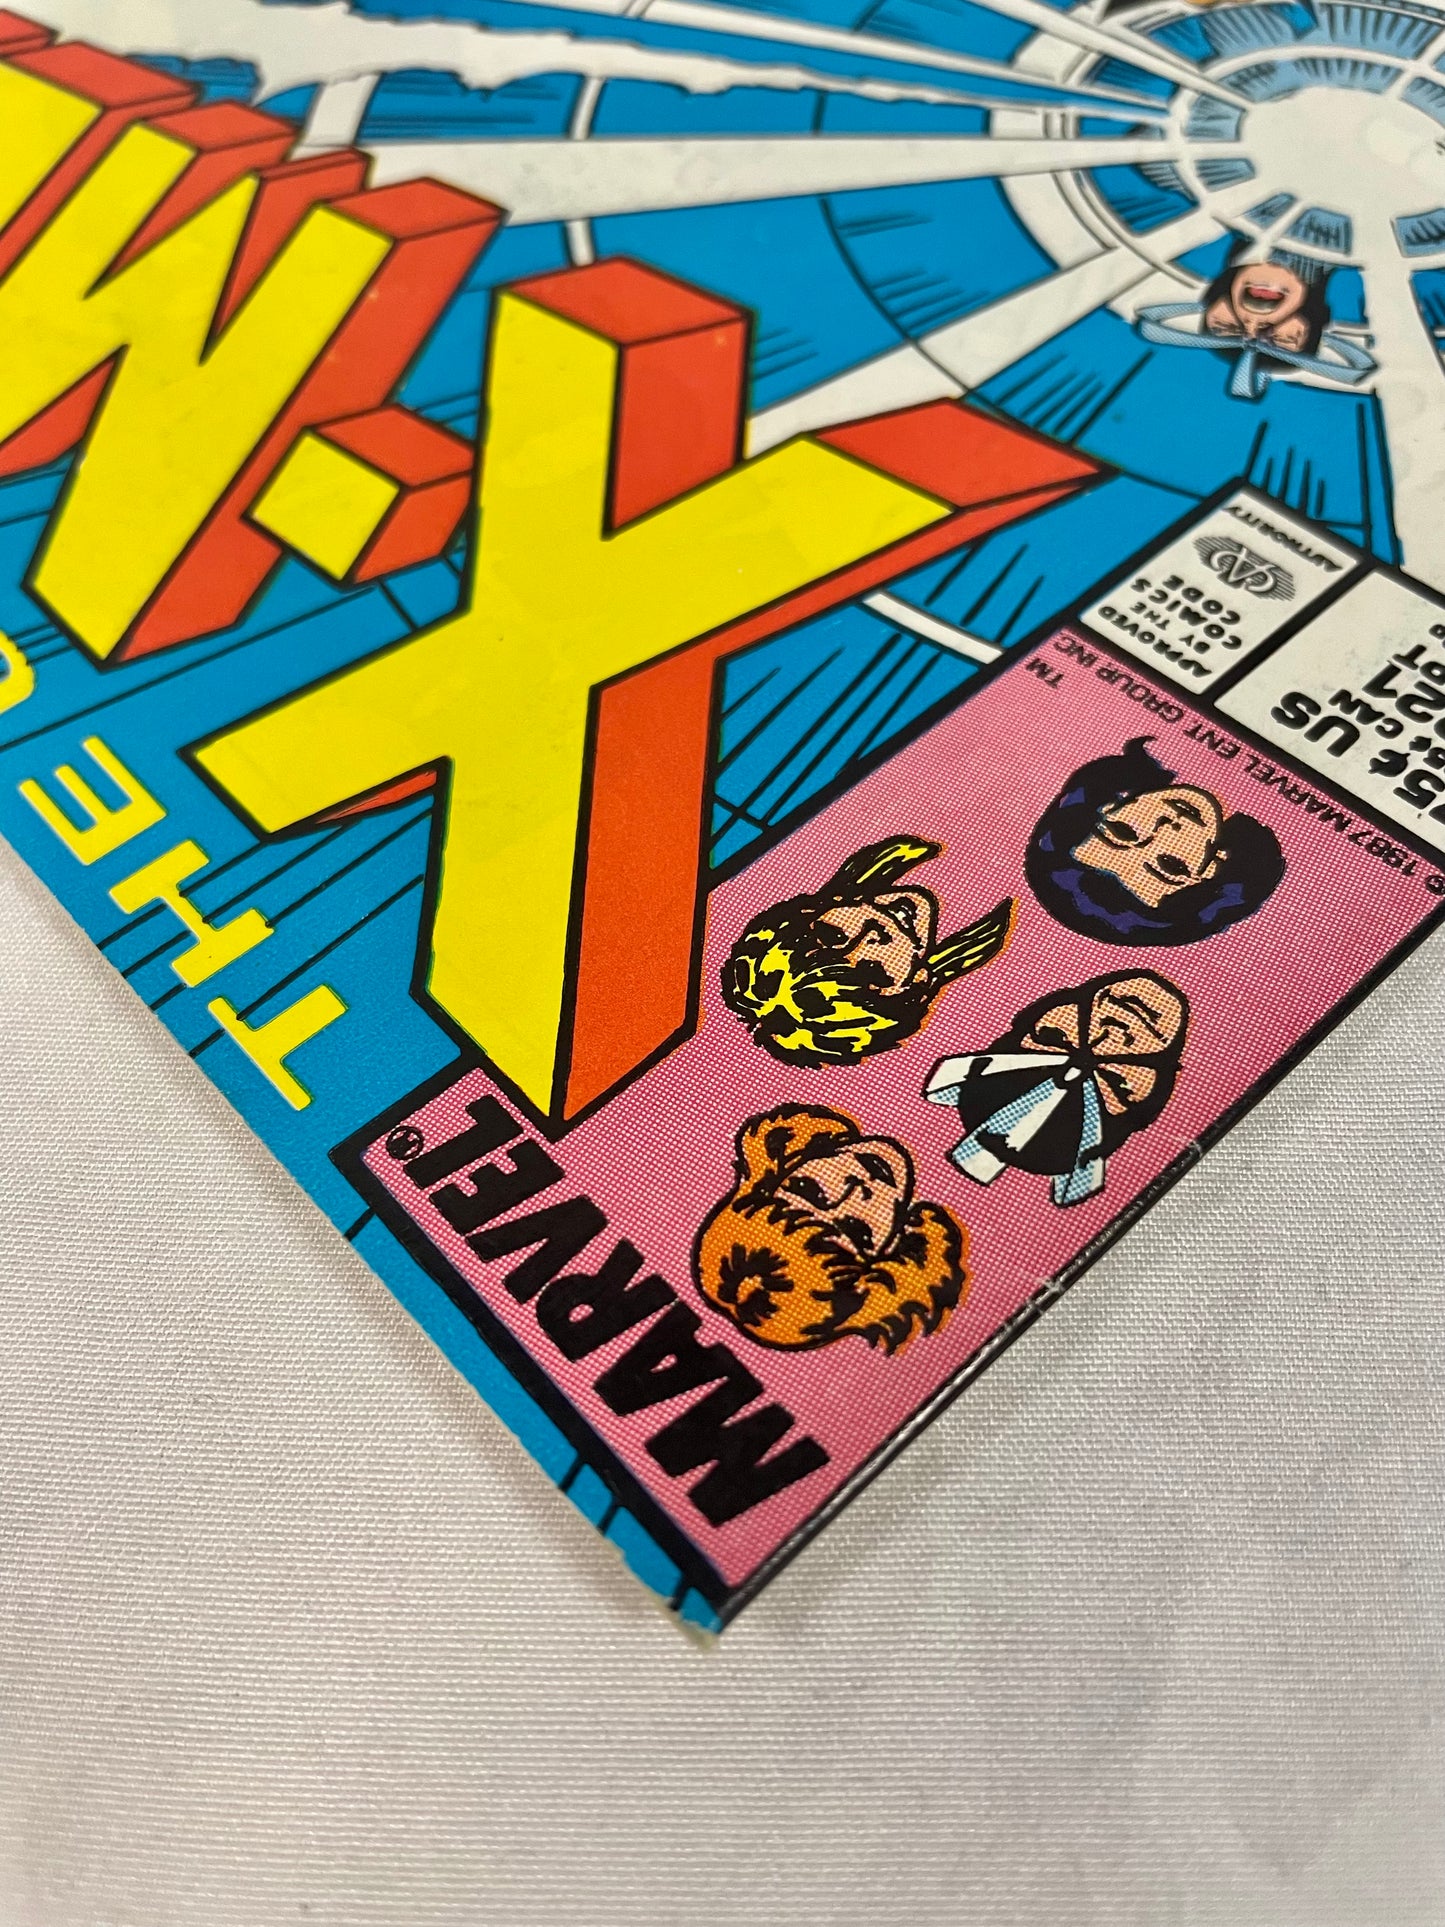 The Uncanny X-MEN #221